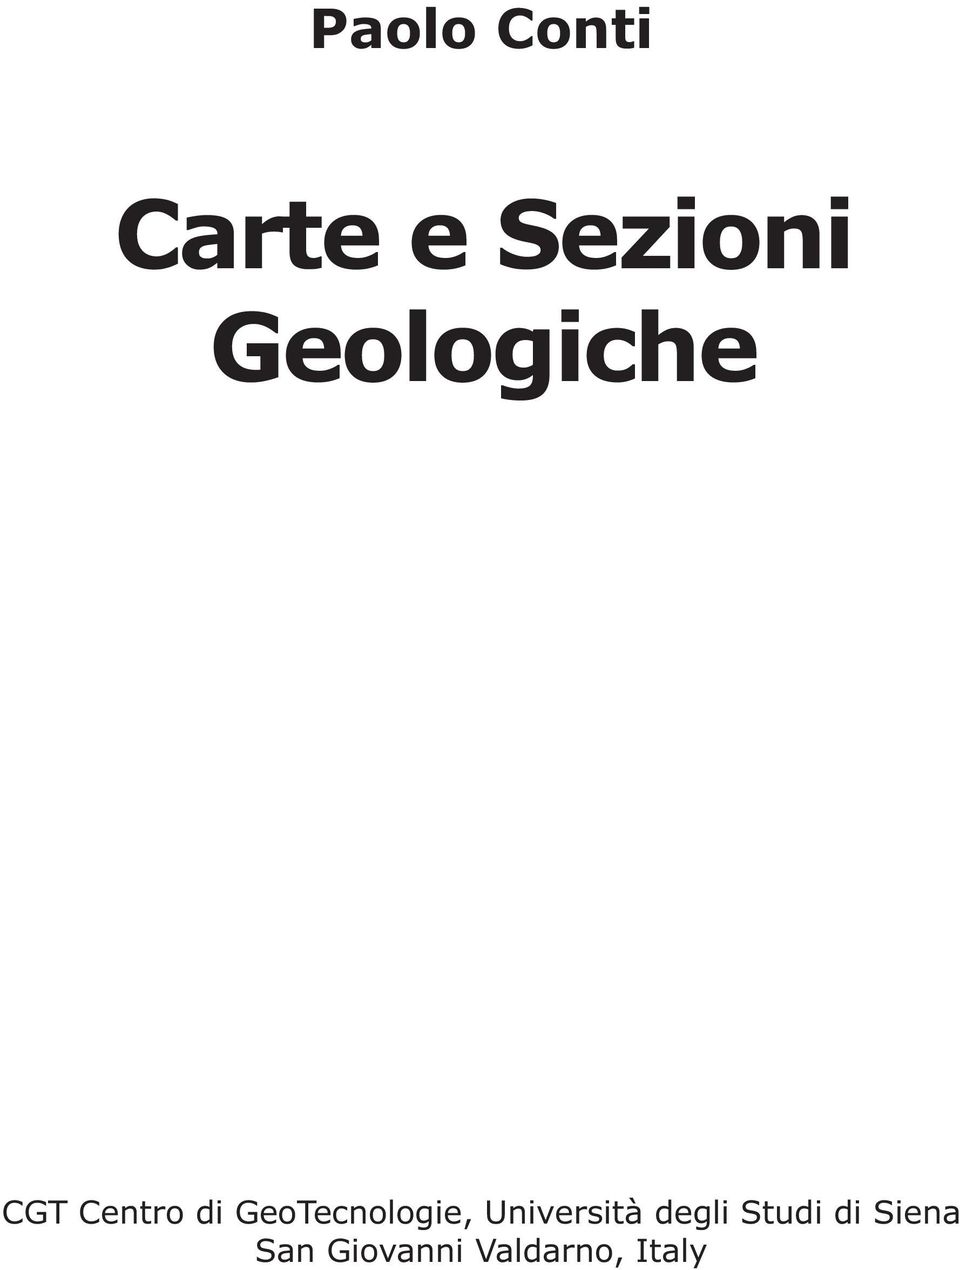 GeoTecnologie, Università degli